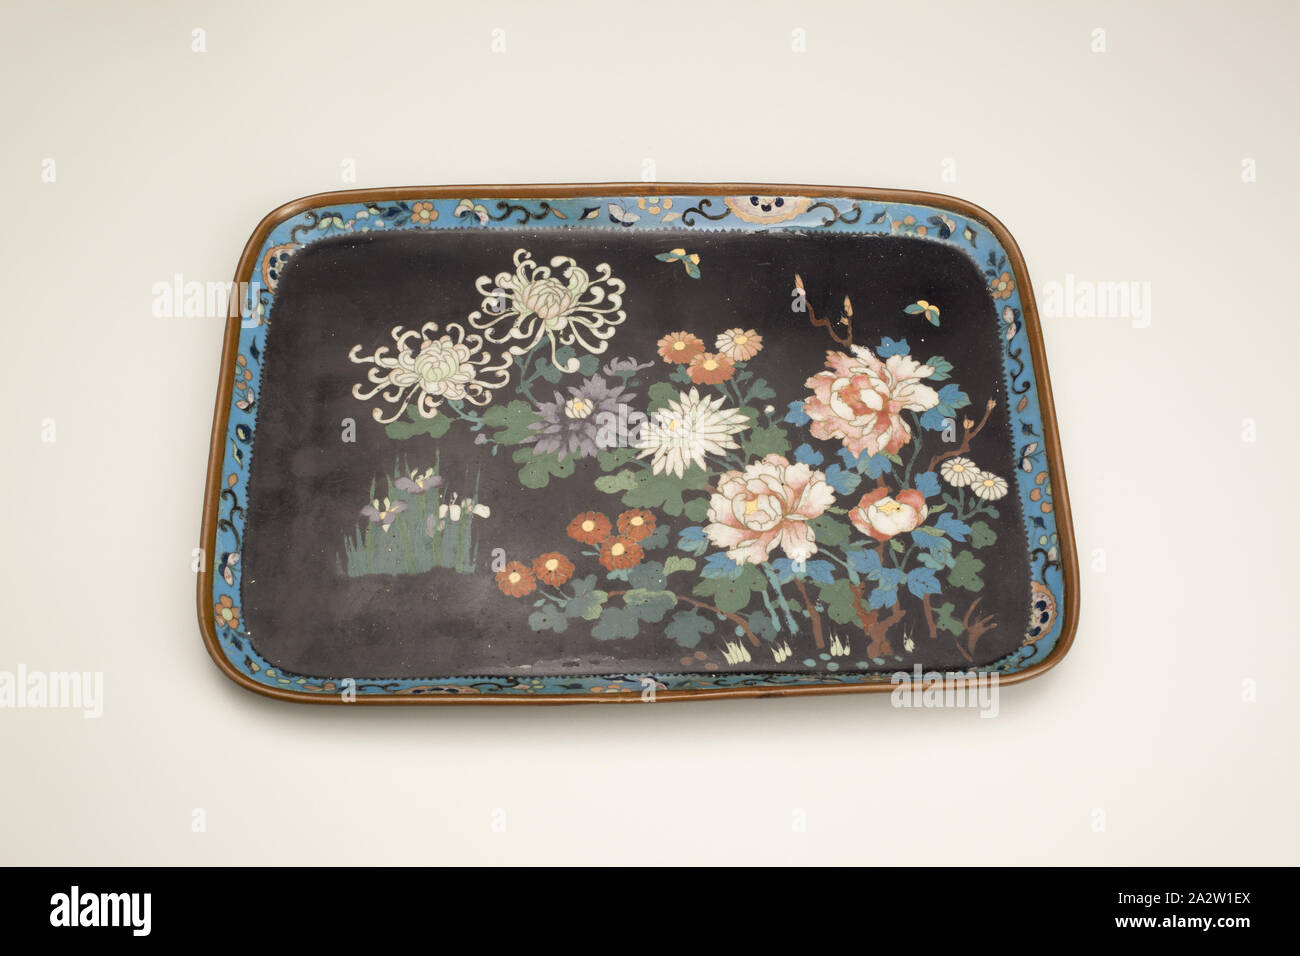 tray, Cloissone, 9-1/2 x 7 in., Asian Art Stock Photo